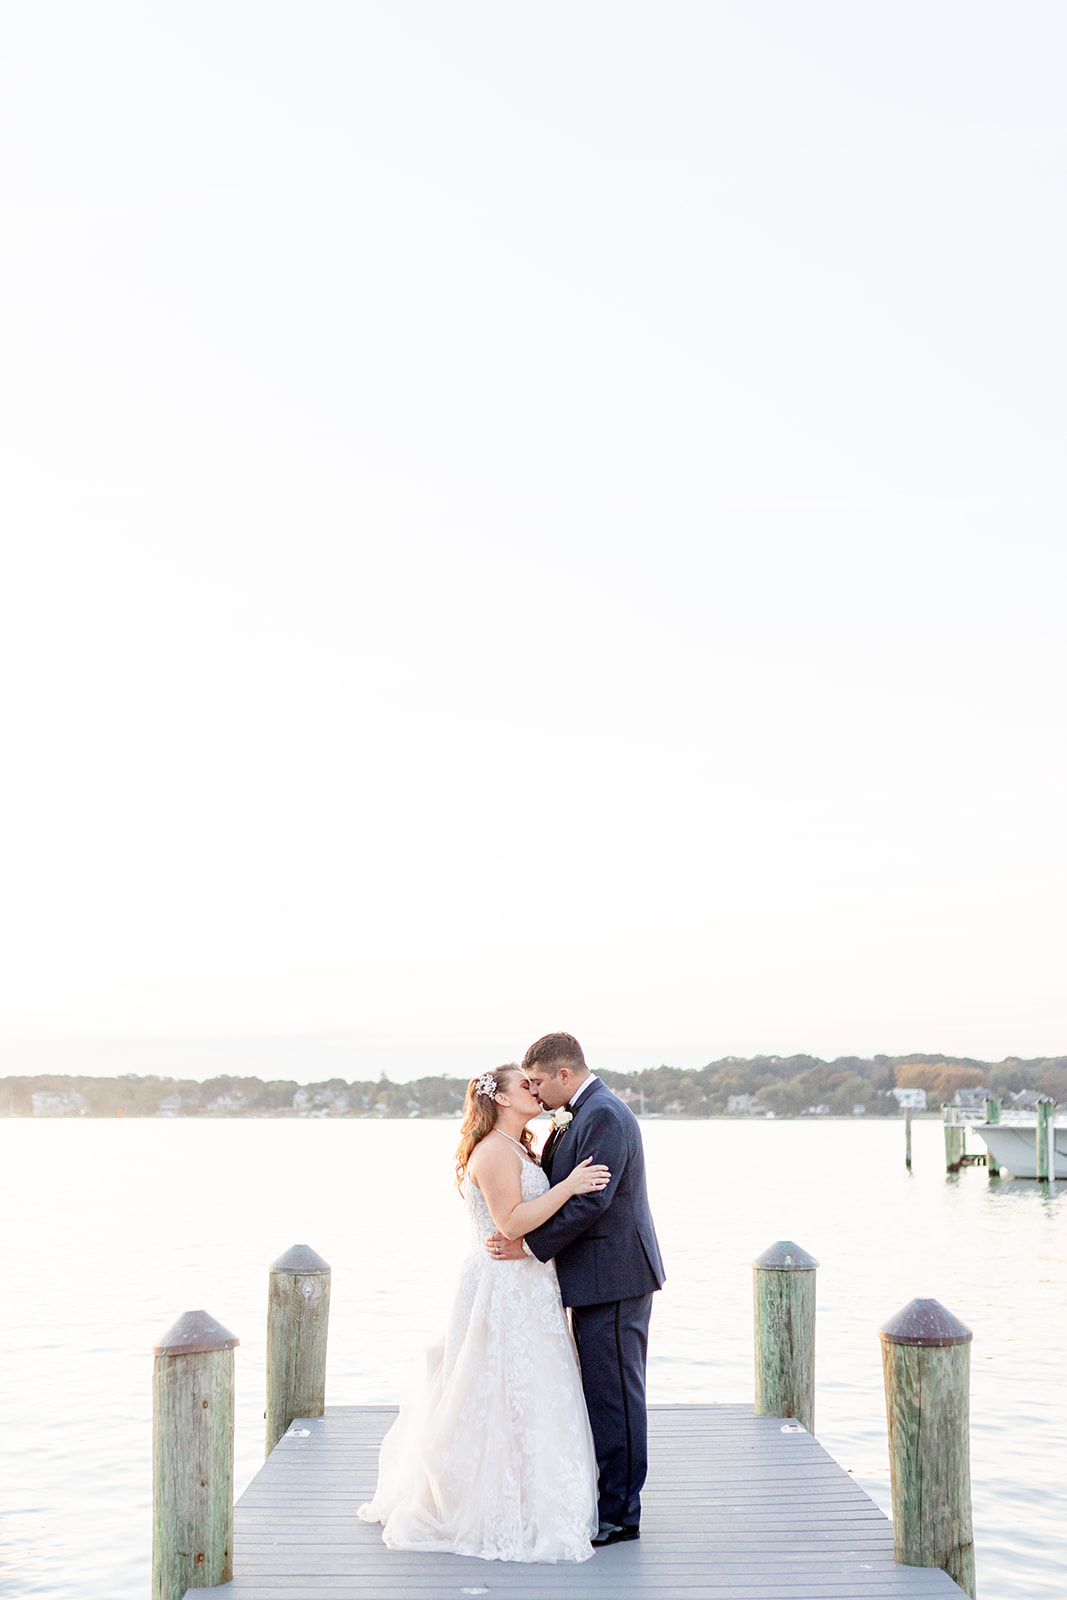 Newlyweds kiss on a lake dock at sunset